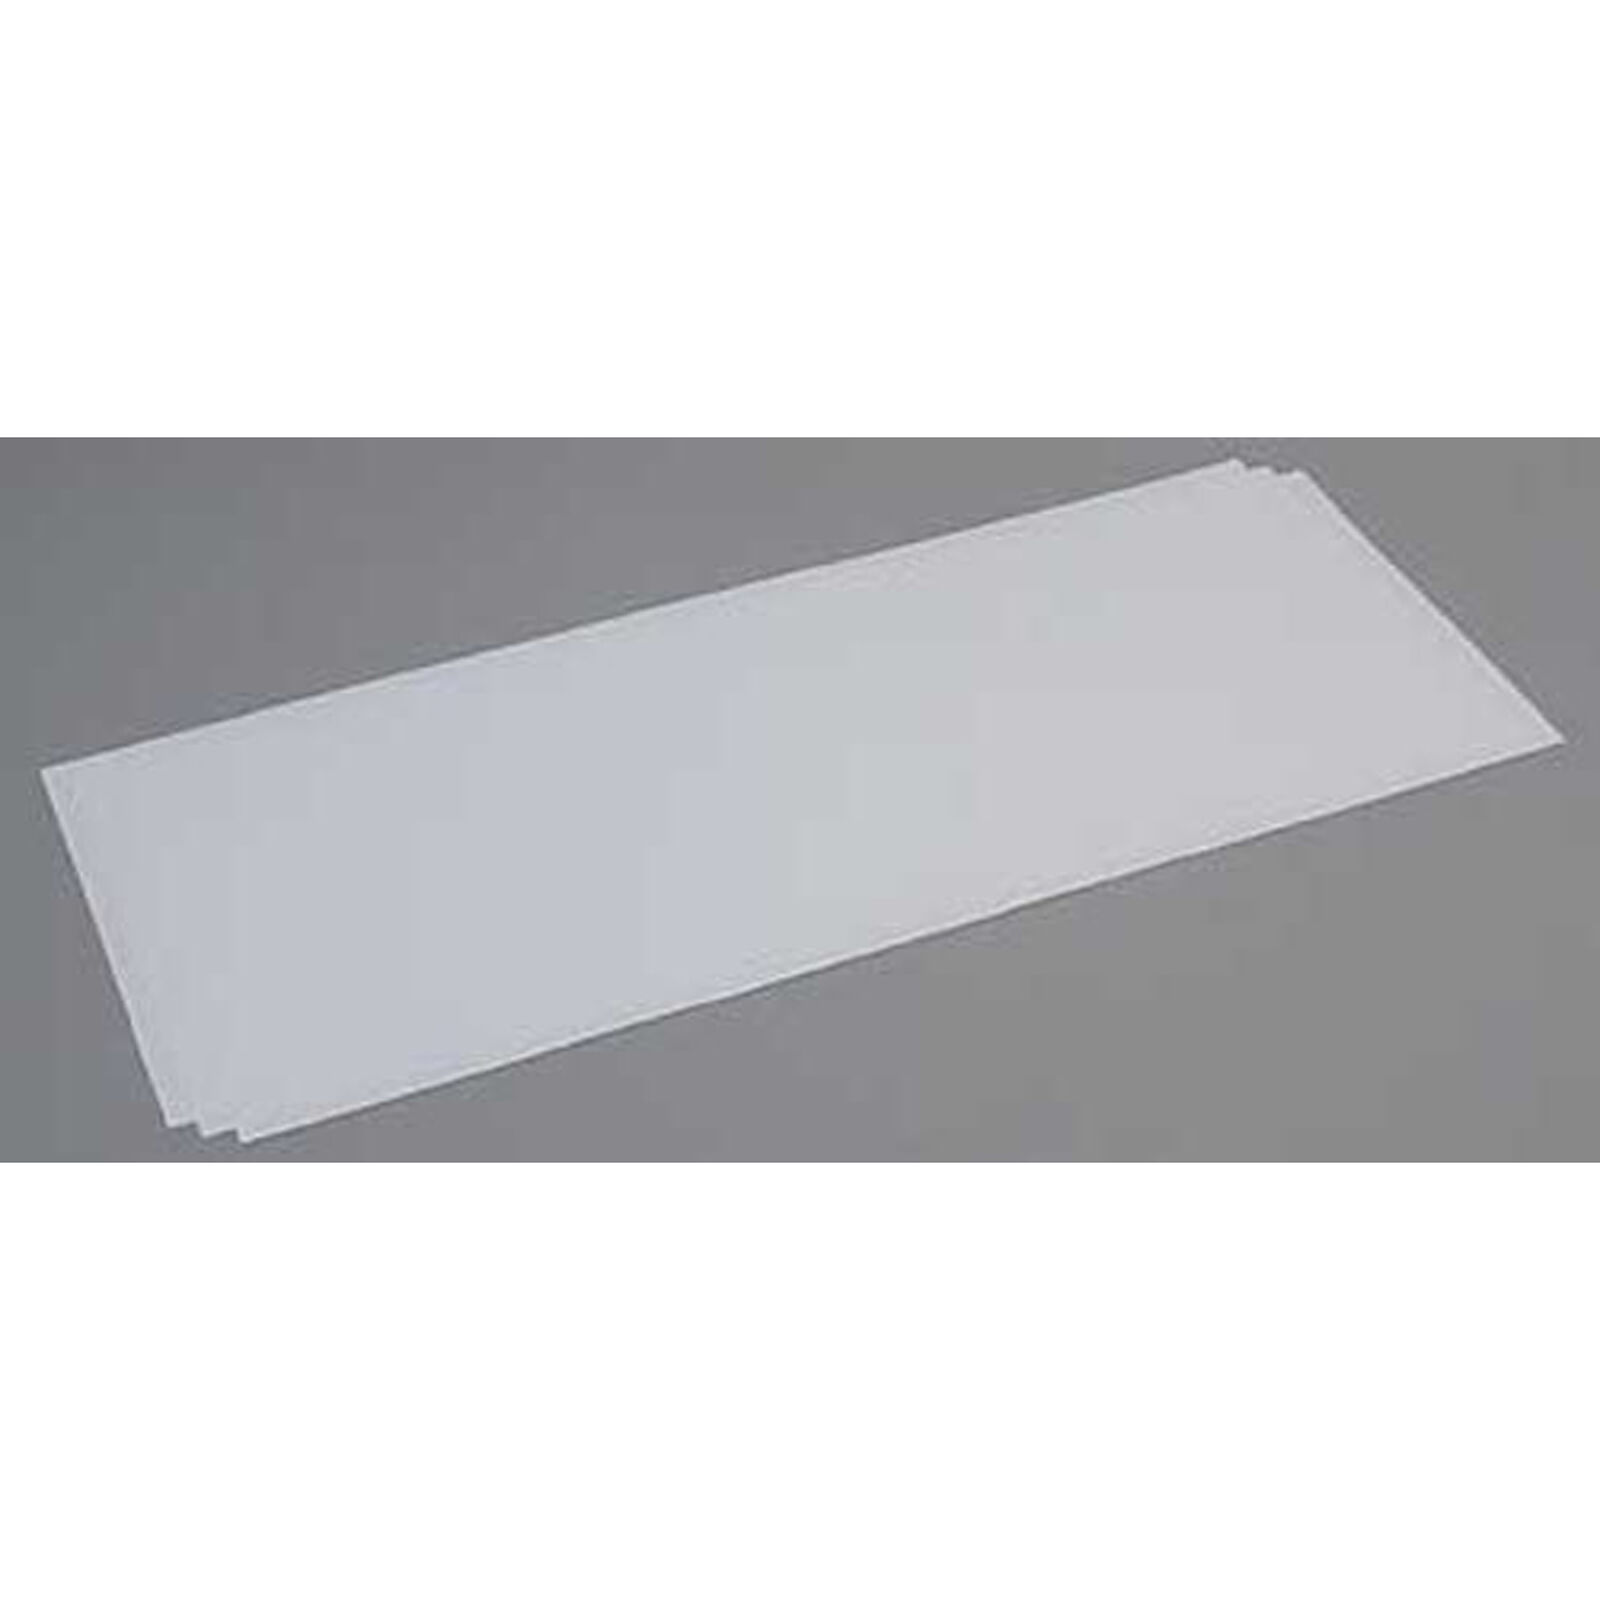 White Sheet .040 x 8 x 21 (3)